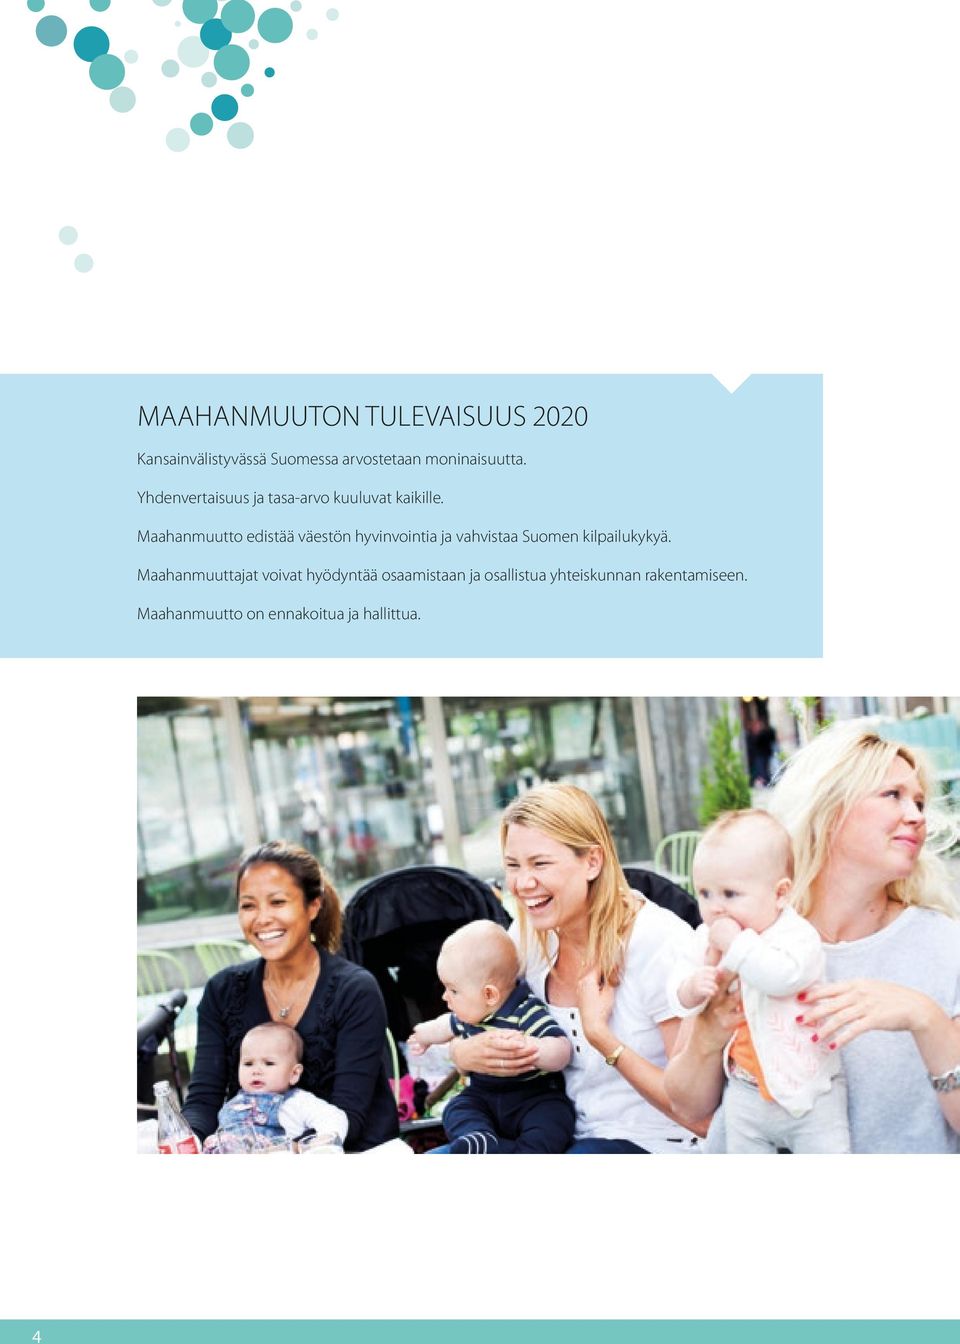 Maahanmuutto edistää väestön hyvinvointia ja vahvistaa Suomen kilpailukykyä.